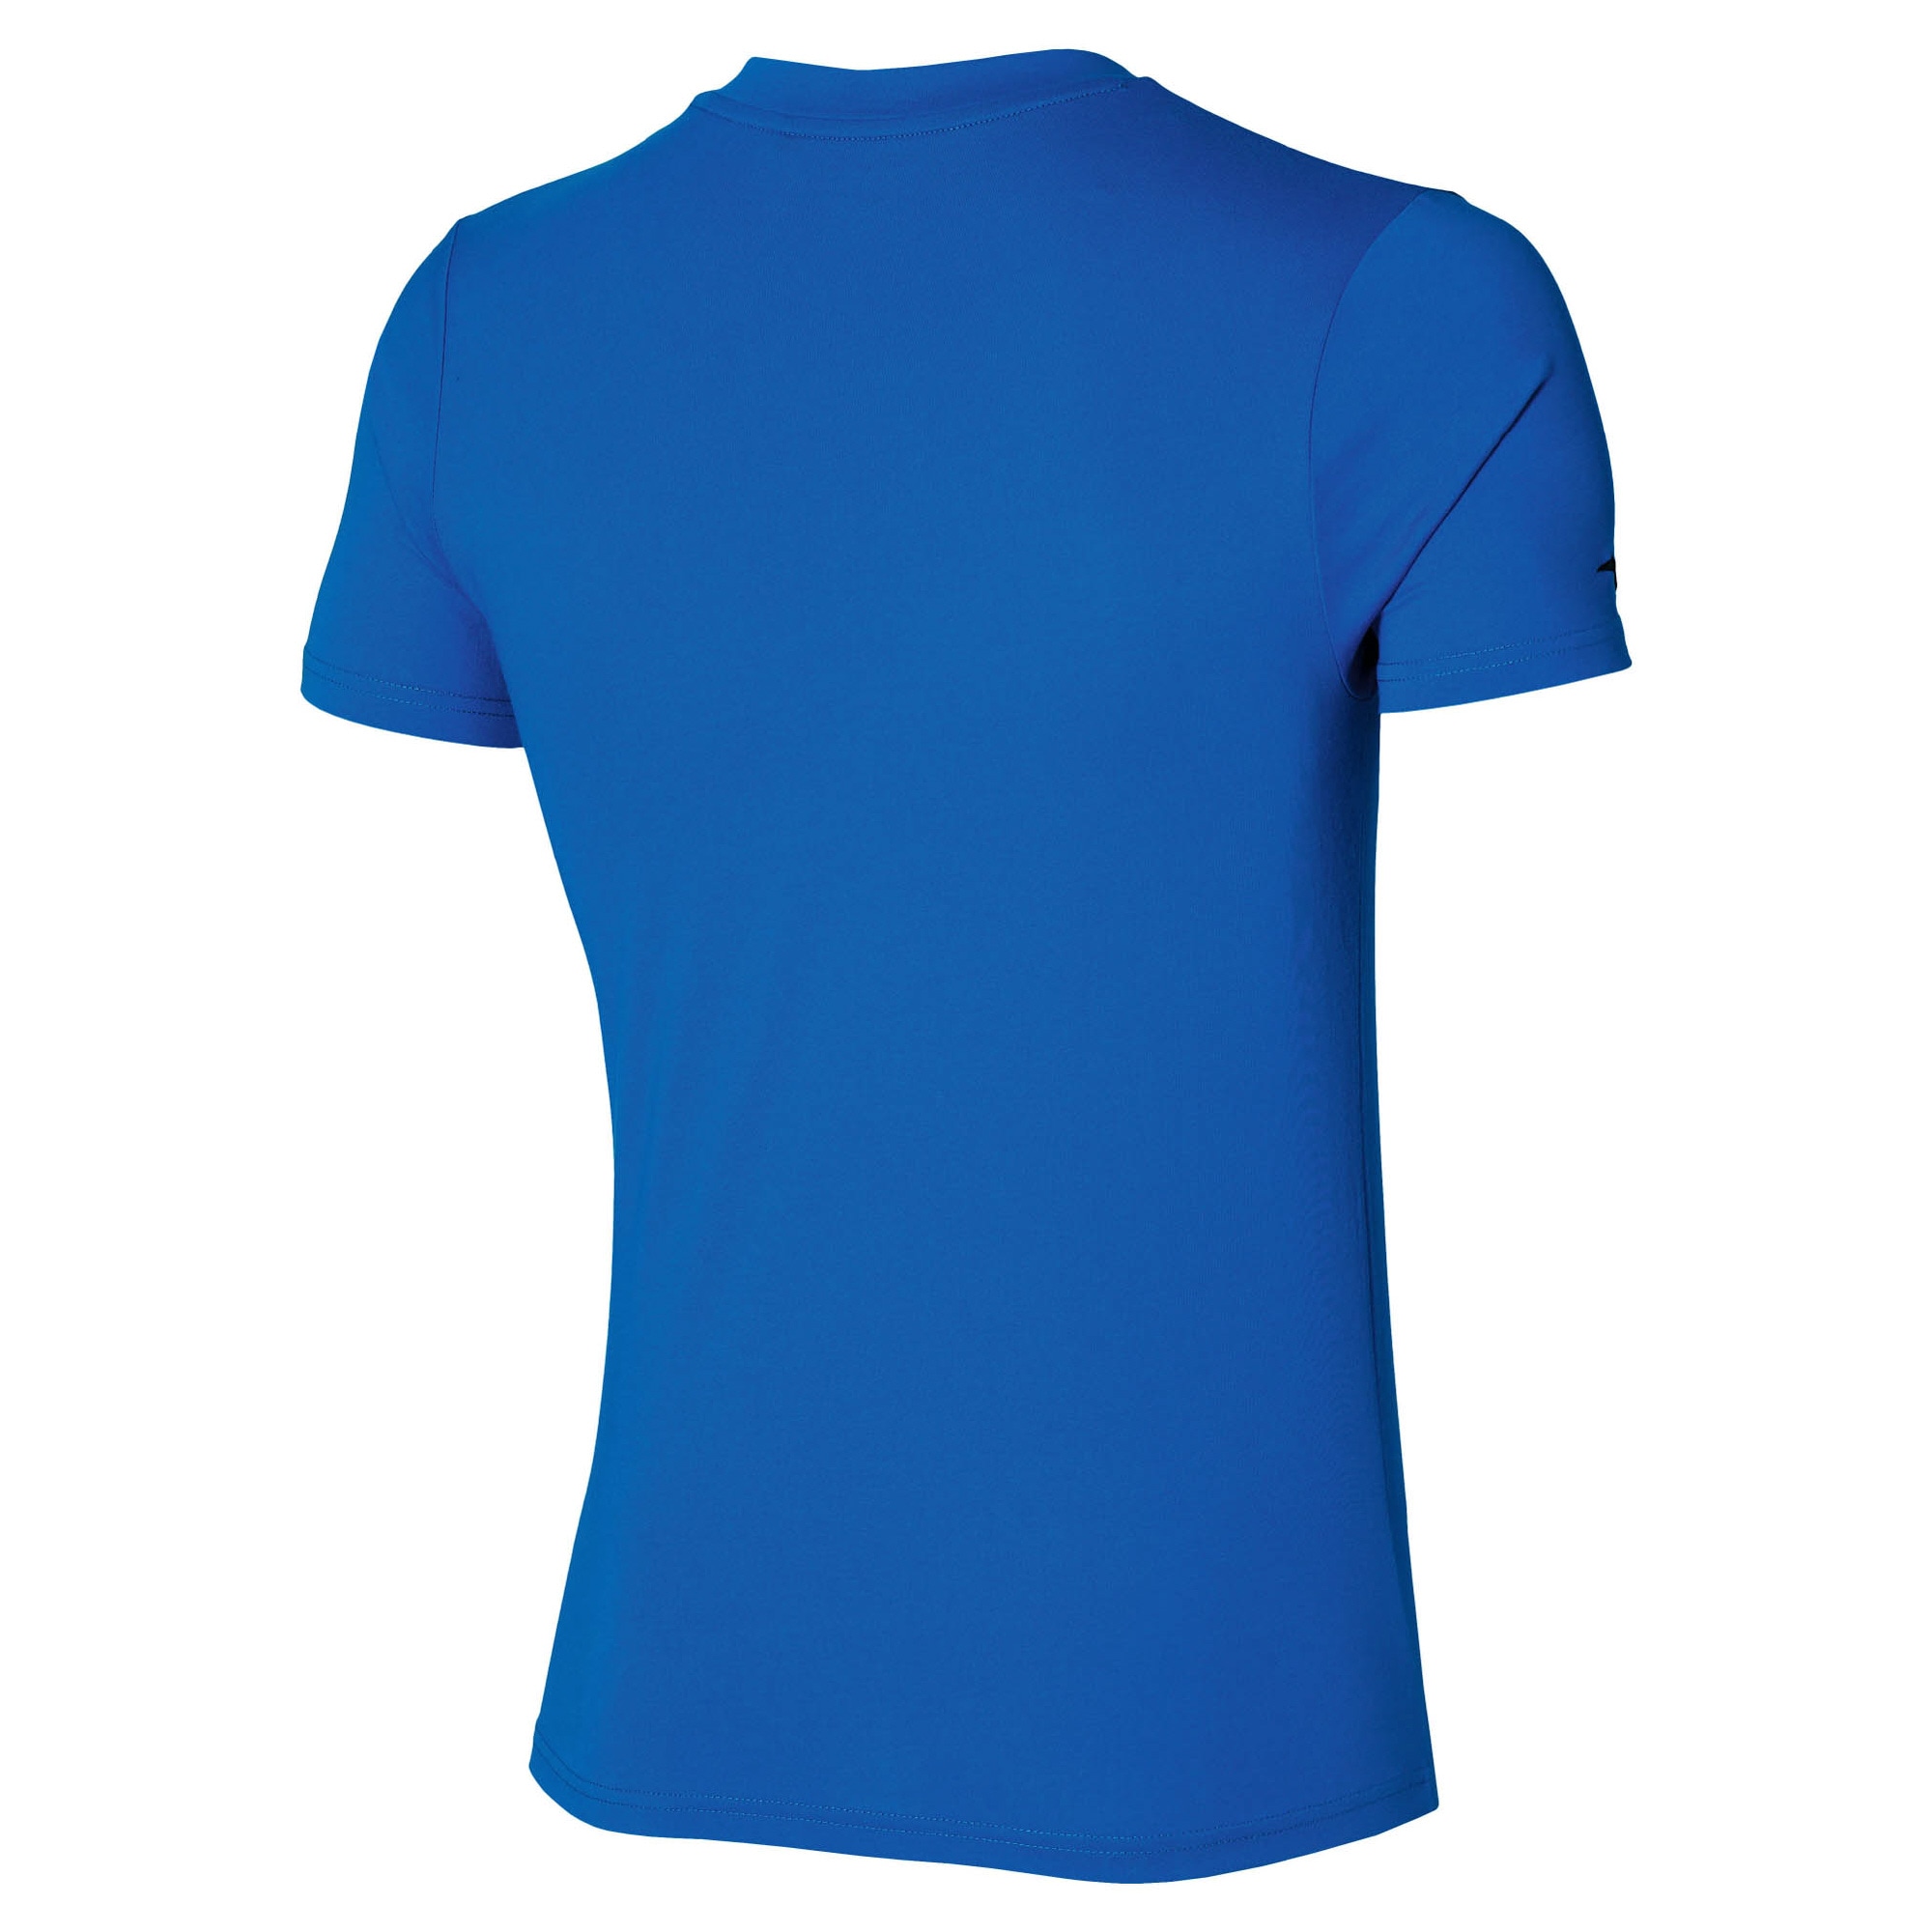 SR4 半袖Tシャツ[ユニセックス]|P2MA2S50|セルヒオ・ラモス選手